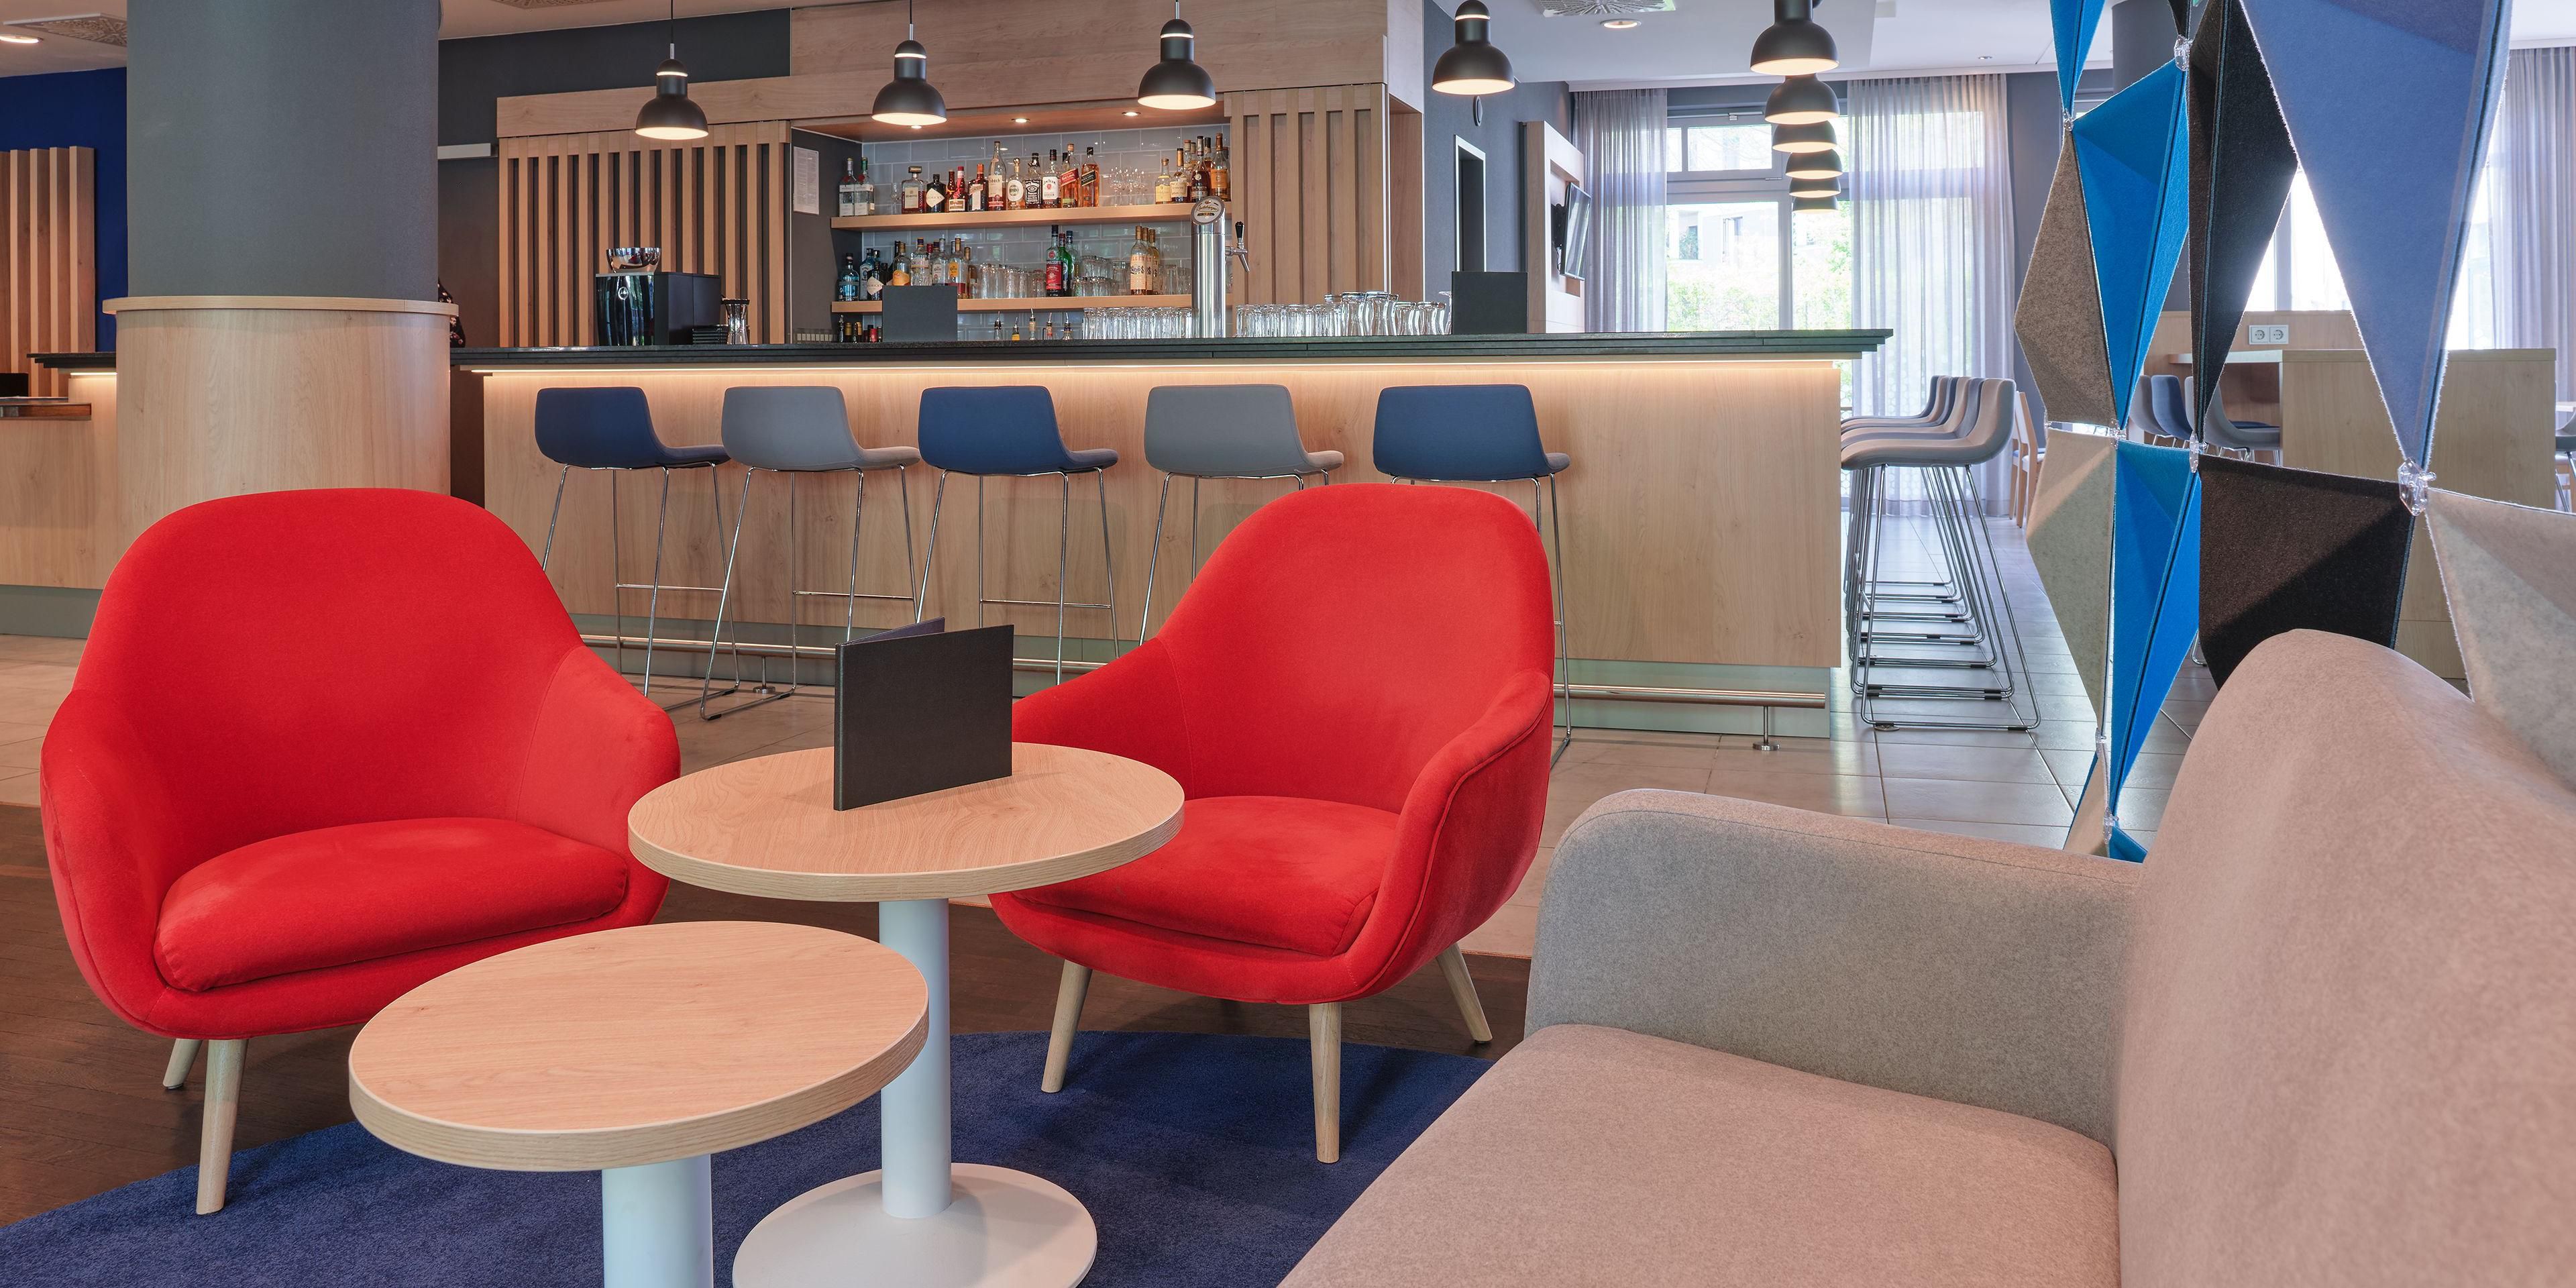 Entdecken Sie jetzt das neuartige Open-Lobby-Konzept. Entspannen Sie jederzeit bei Kaffee oder Snacks und arbeiten Sie in unserer einladenden Open Lobby.